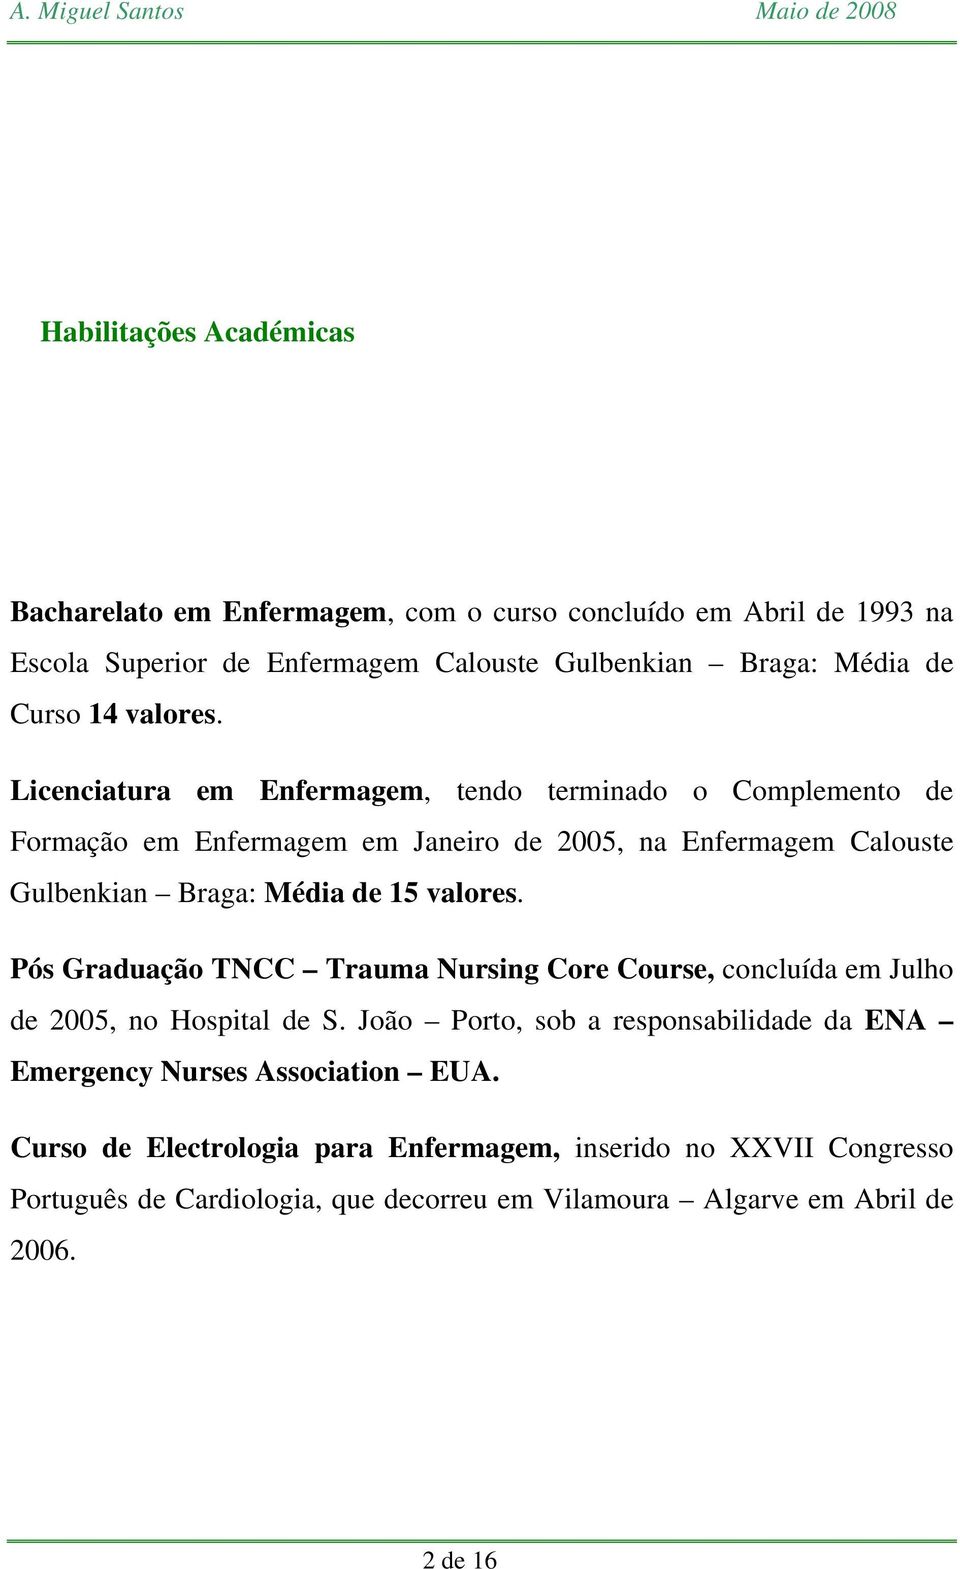 Licenciatura em Enfermagem, tendo terminado o Complemento de Formação em Enfermagem em Janeiro de 2005, na Enfermagem Calouste Gulbenkian Braga: Média de 15 valores.